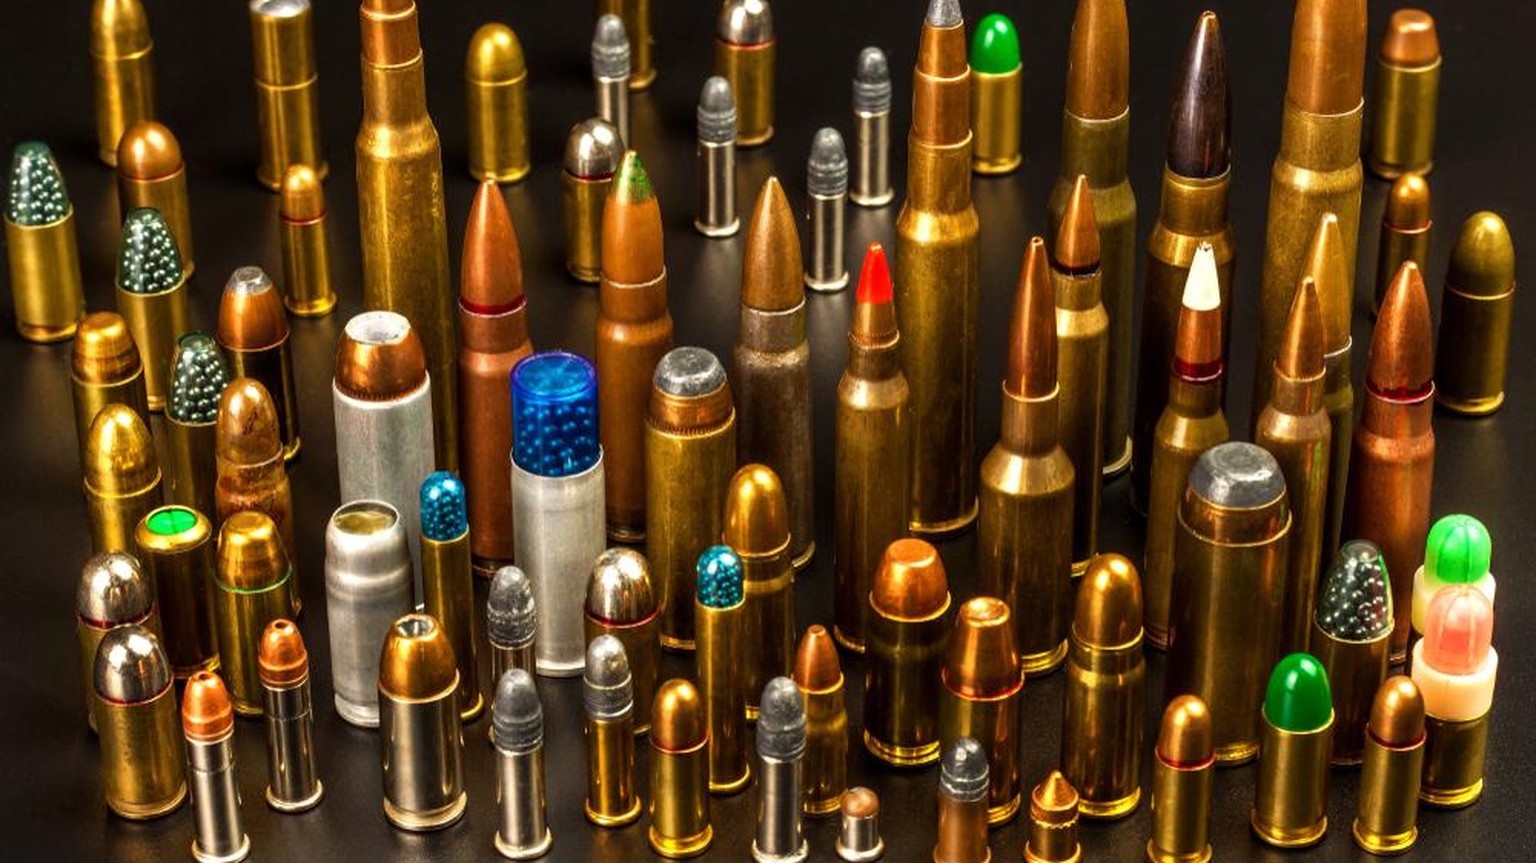 Klassisches Beispiel: Munition zählt als Kriegsmaterial.
Kriegsgeschäfte-Initiative kriegsgeschaefte abstimmung 2020